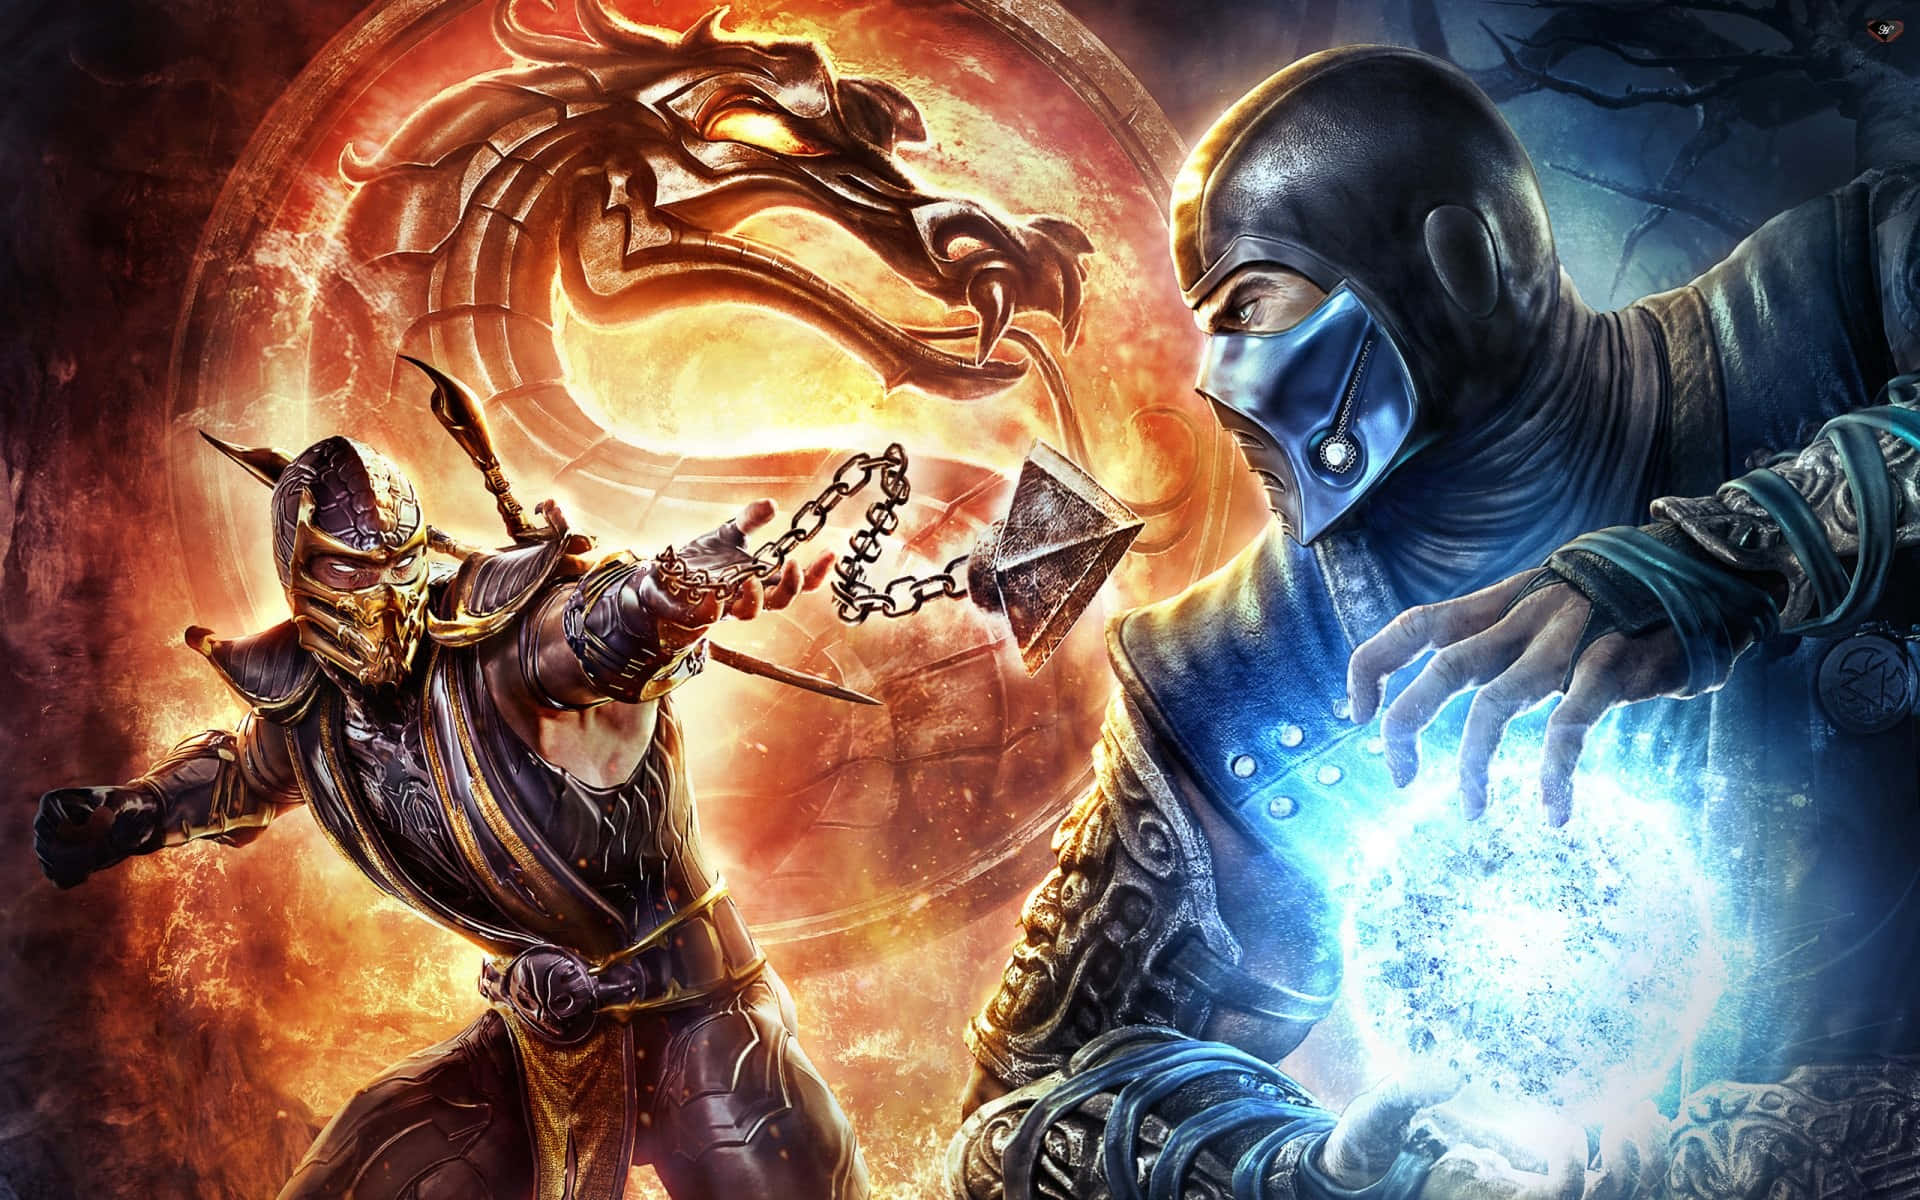 Gør dig klar til hurtige, spændingsfyldte actionscener, når det seneste udspil i den populære Mortal Kombat-franchise bliver lanceret i 2021! Wallpaper